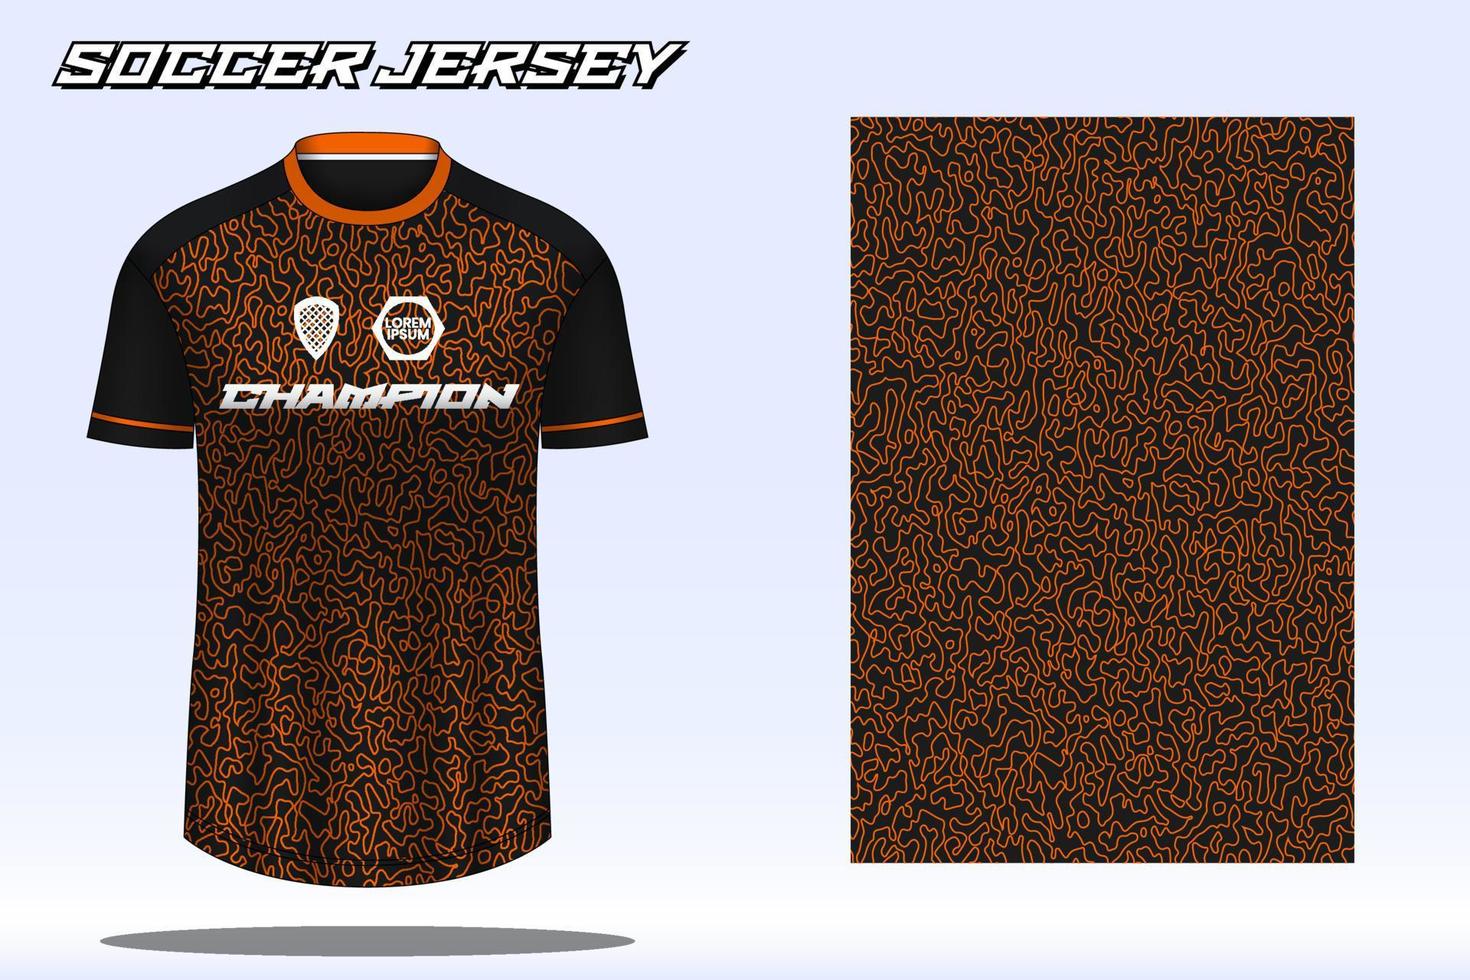 fotboll jersey sport t-shirt design attrapp för fotboll klubb 08 vektor